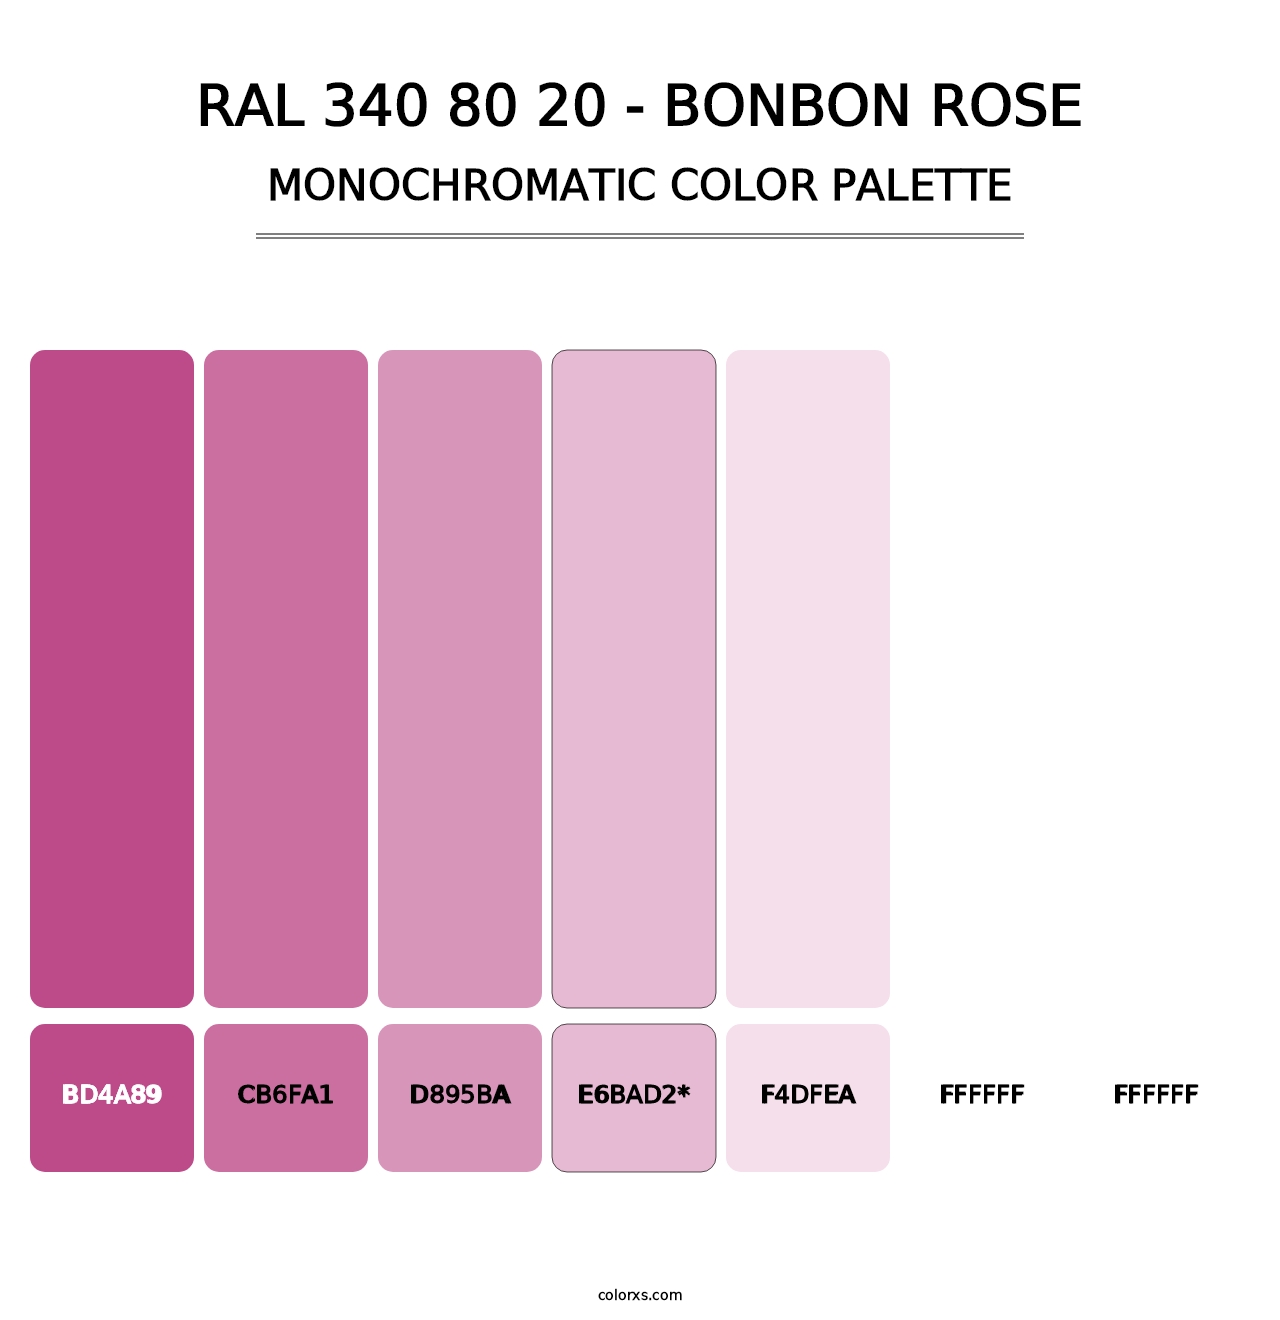 RAL 340 80 20 - Bonbon Rose - Monochromatic Color Palette